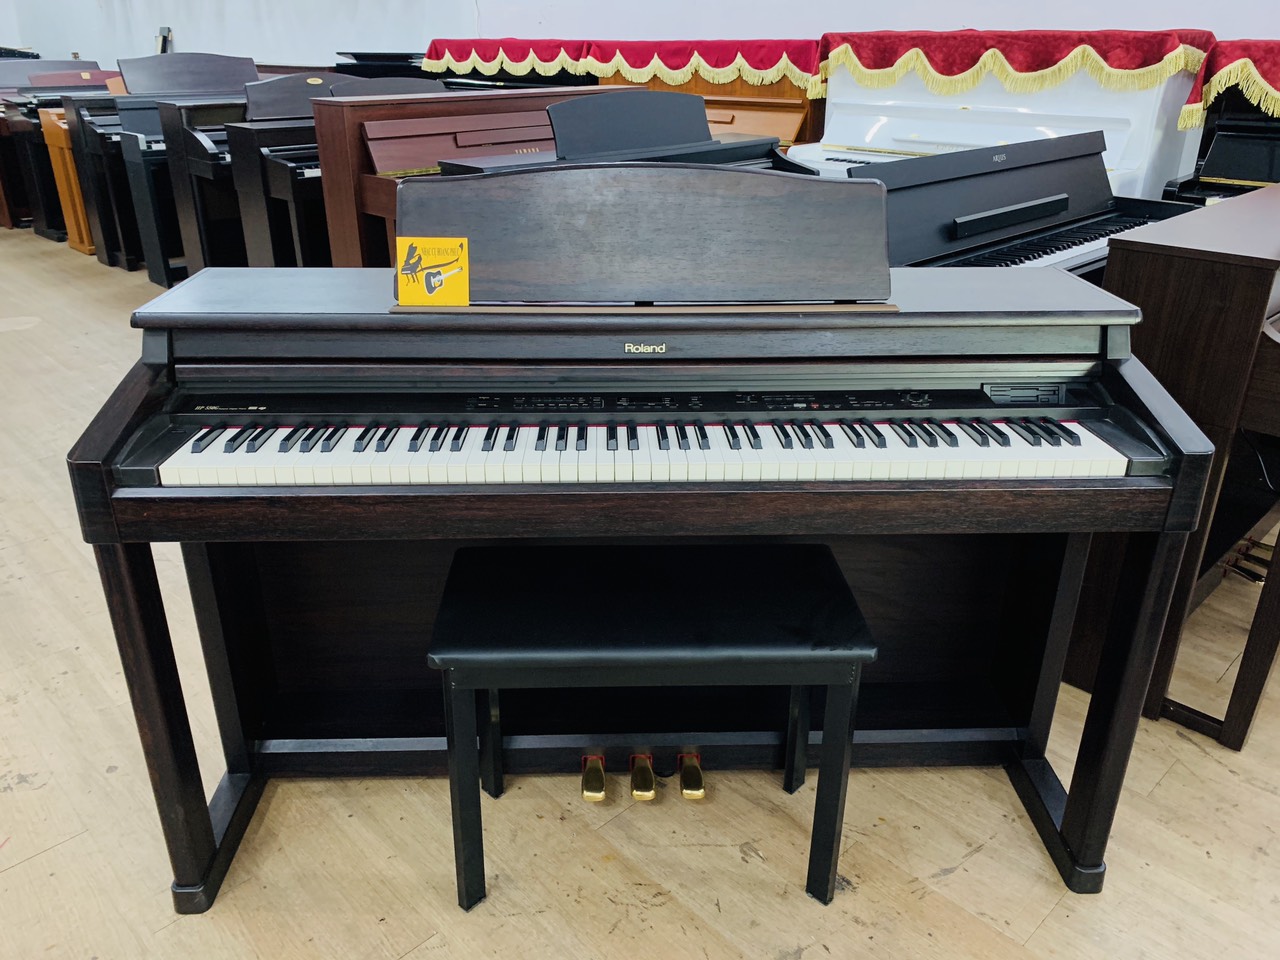 Tìm hiểu địa chỉ uy tín bán đàn piano điện chất lượng?